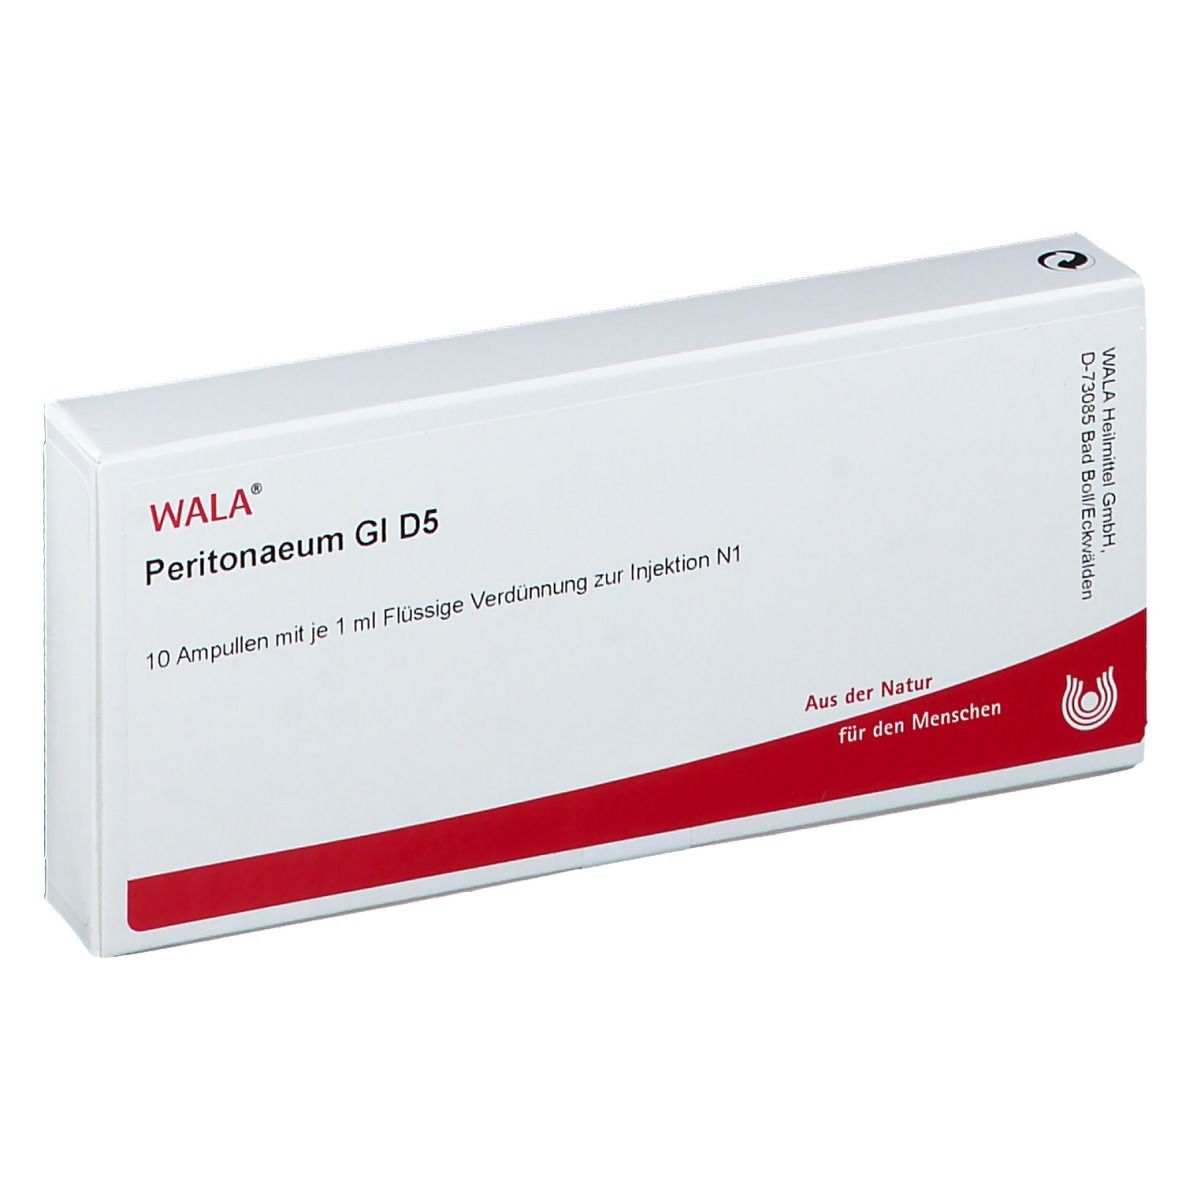 WALA® Peritonaeum Gl D 5